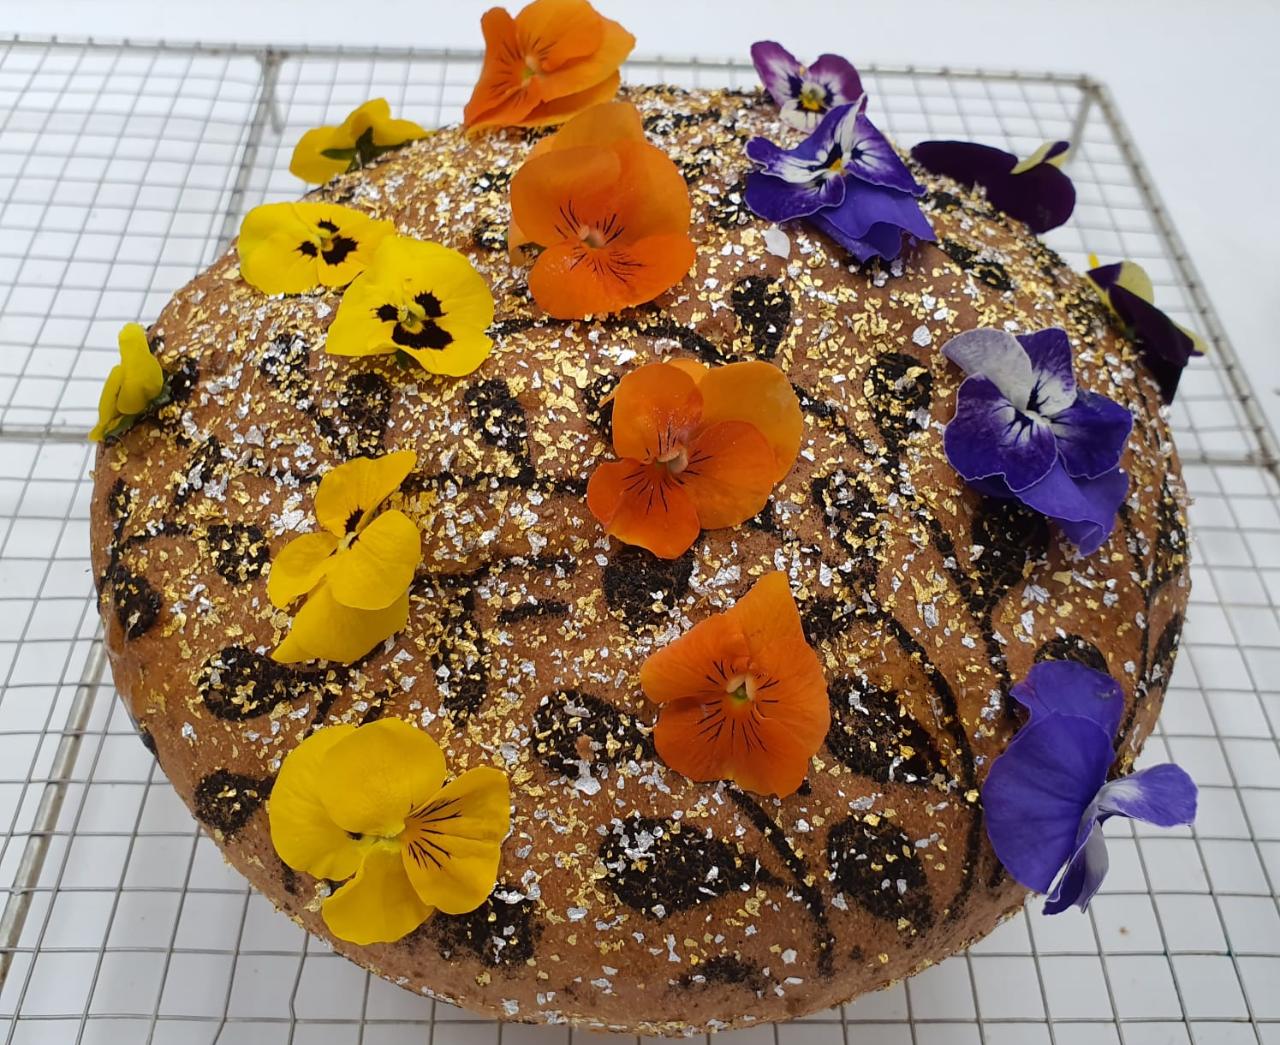 La panadería malagueña que elabora el pan más caro del mundo: "Todo empezó con una broma"